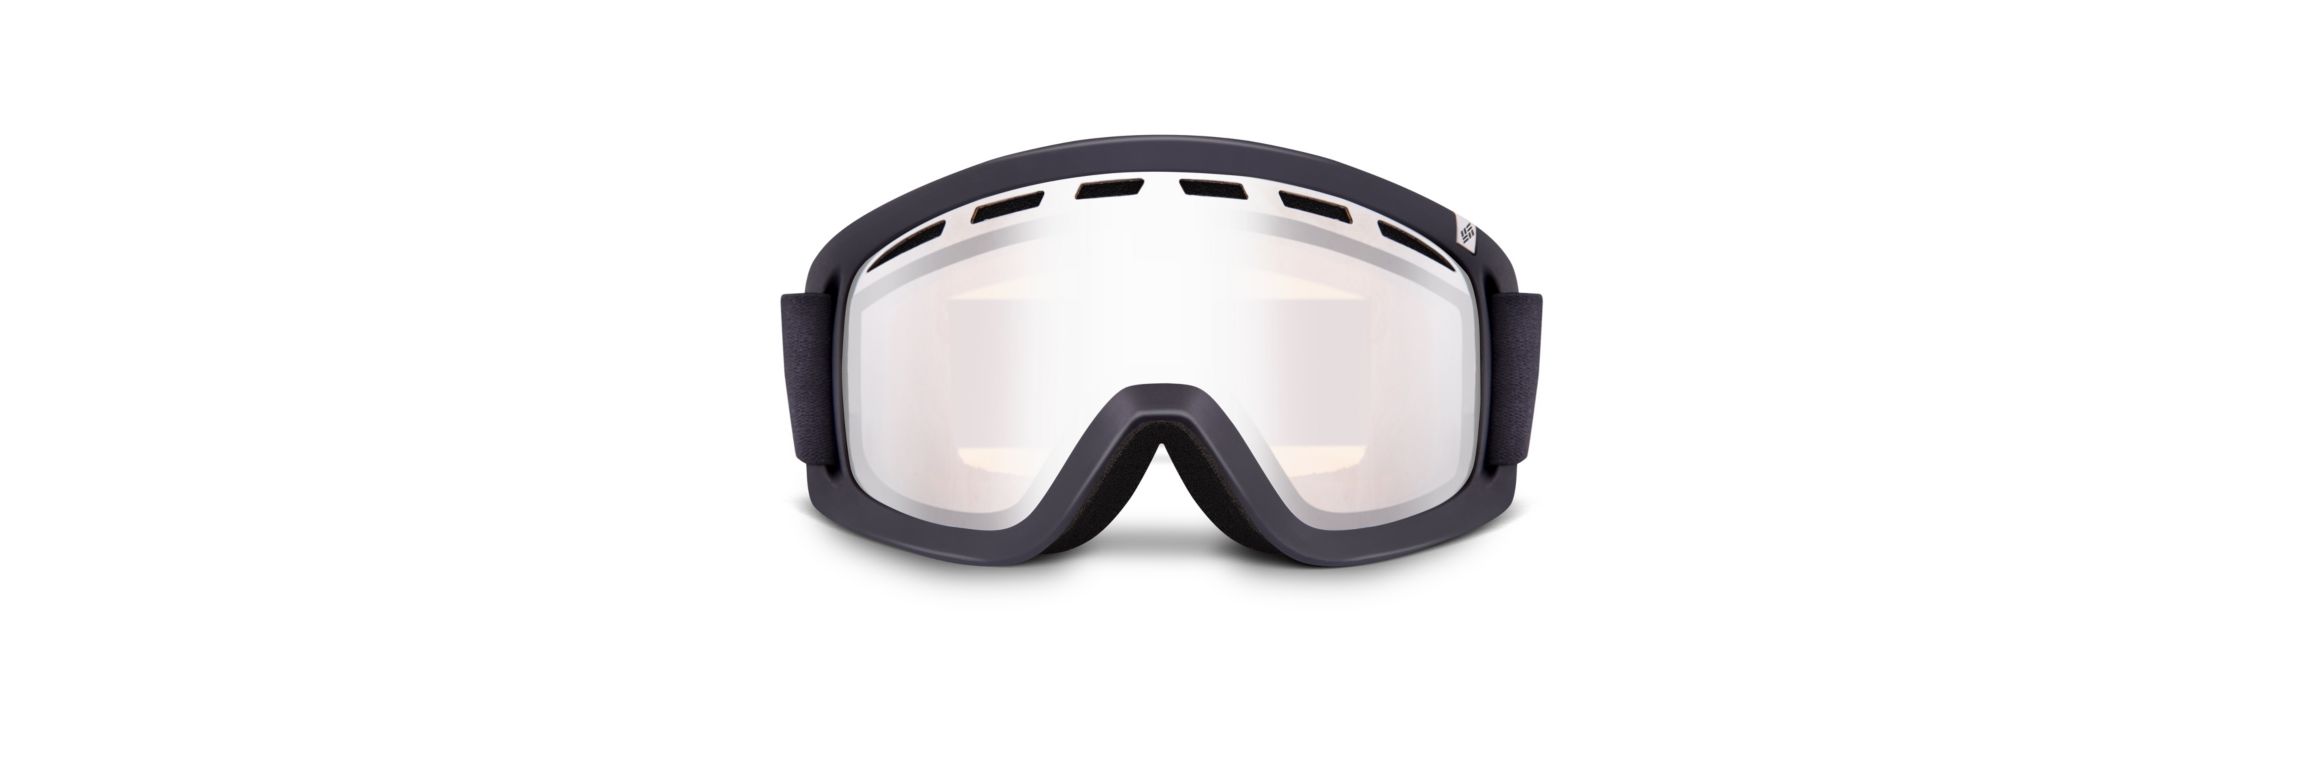 Columbia Women's Whirlibird Ski Goggles. 2